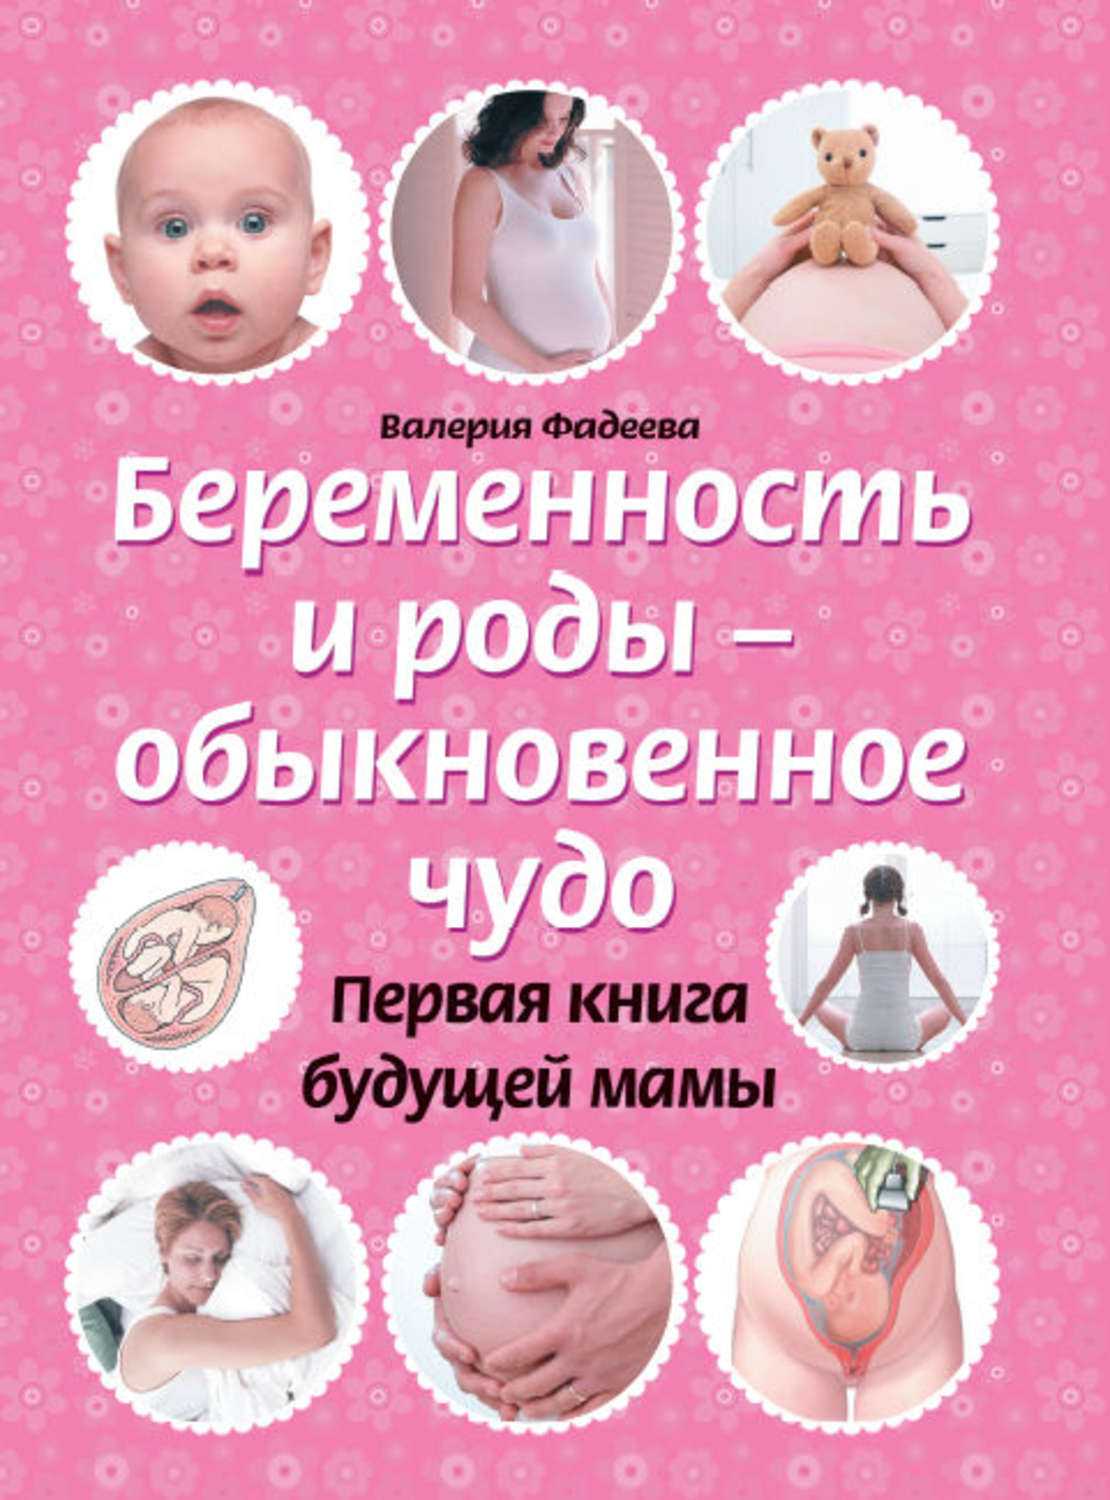 Самые важные книги для будущих мам. что стоит почитать беременным в декрете | дуэт душ